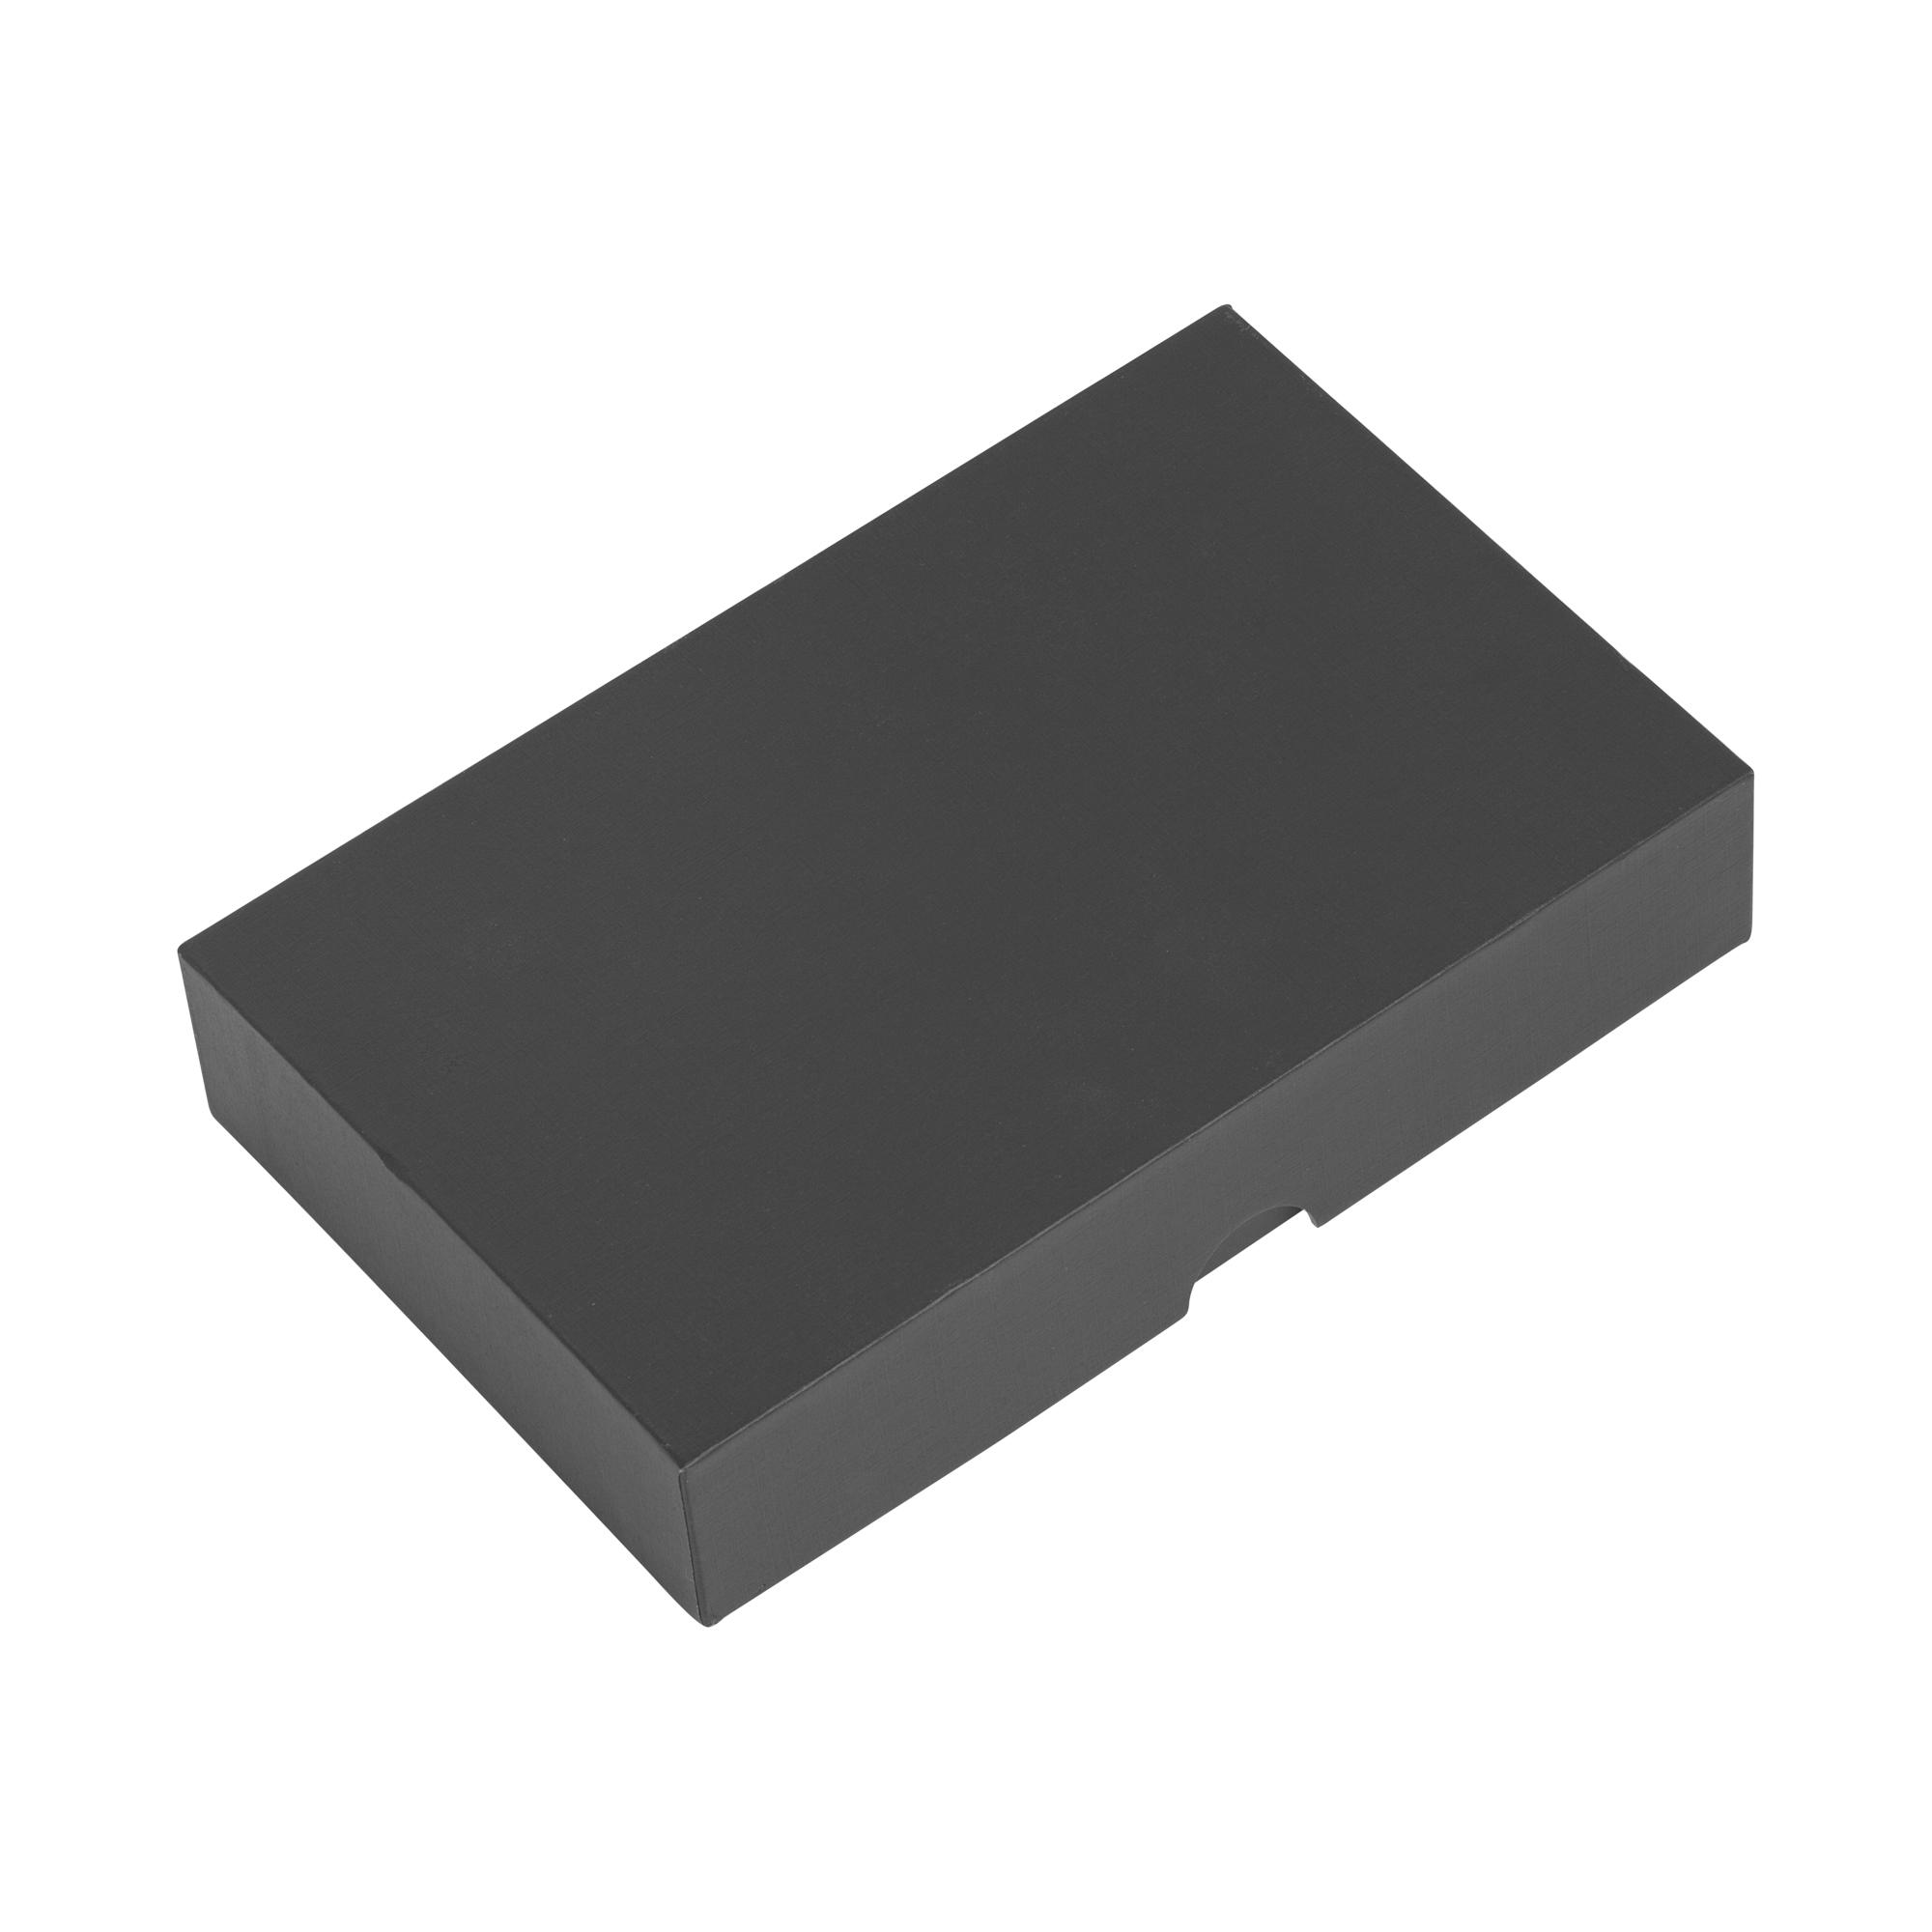 Набор "Камень" на 2 предмета, 4000 mAh /16Gb, с покрытием soft grip, цвет черный, фото 4